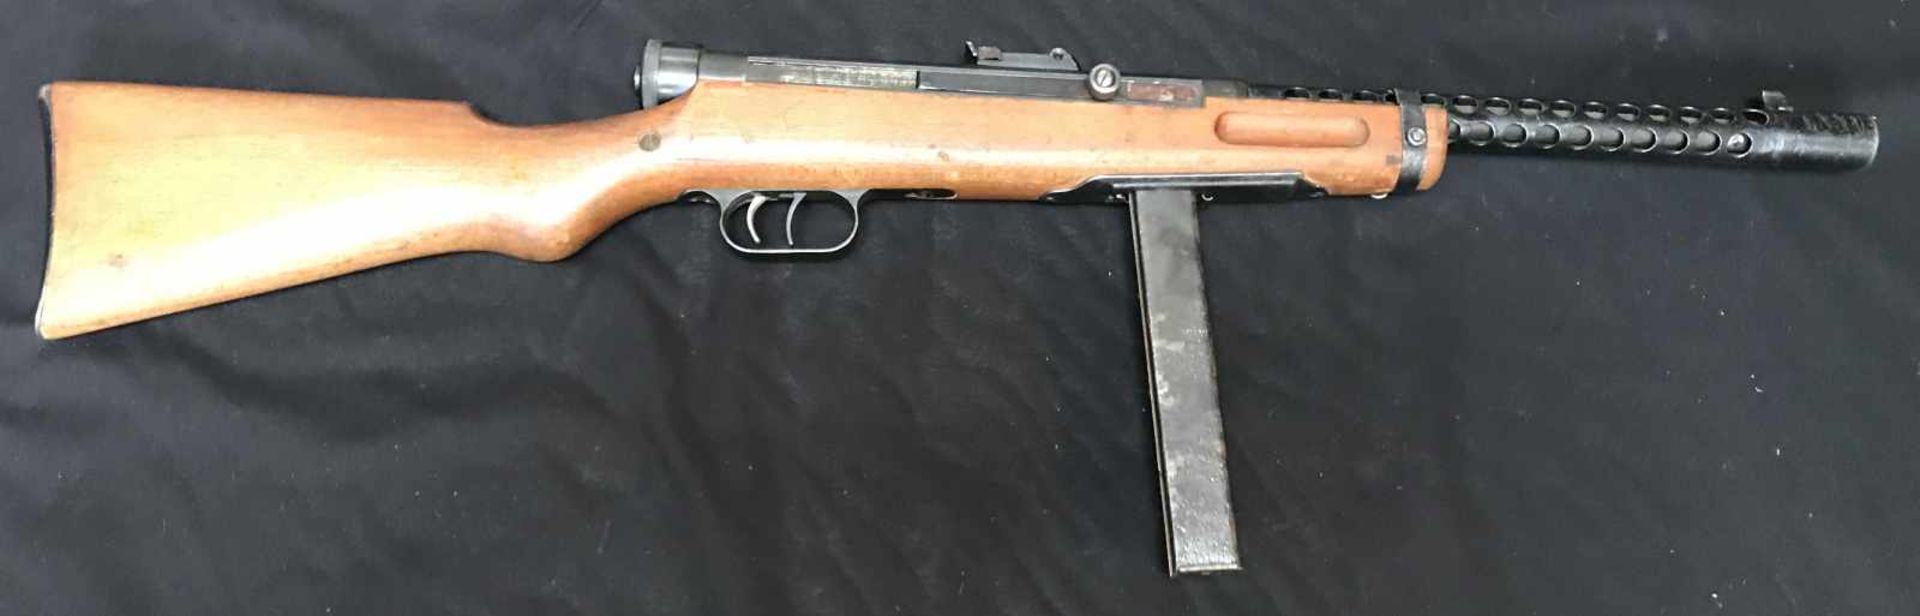 Pistolet mitrailleur PM Beretta modèle 38A de prise. arme complète et fonctionnelle avec chargeur 30